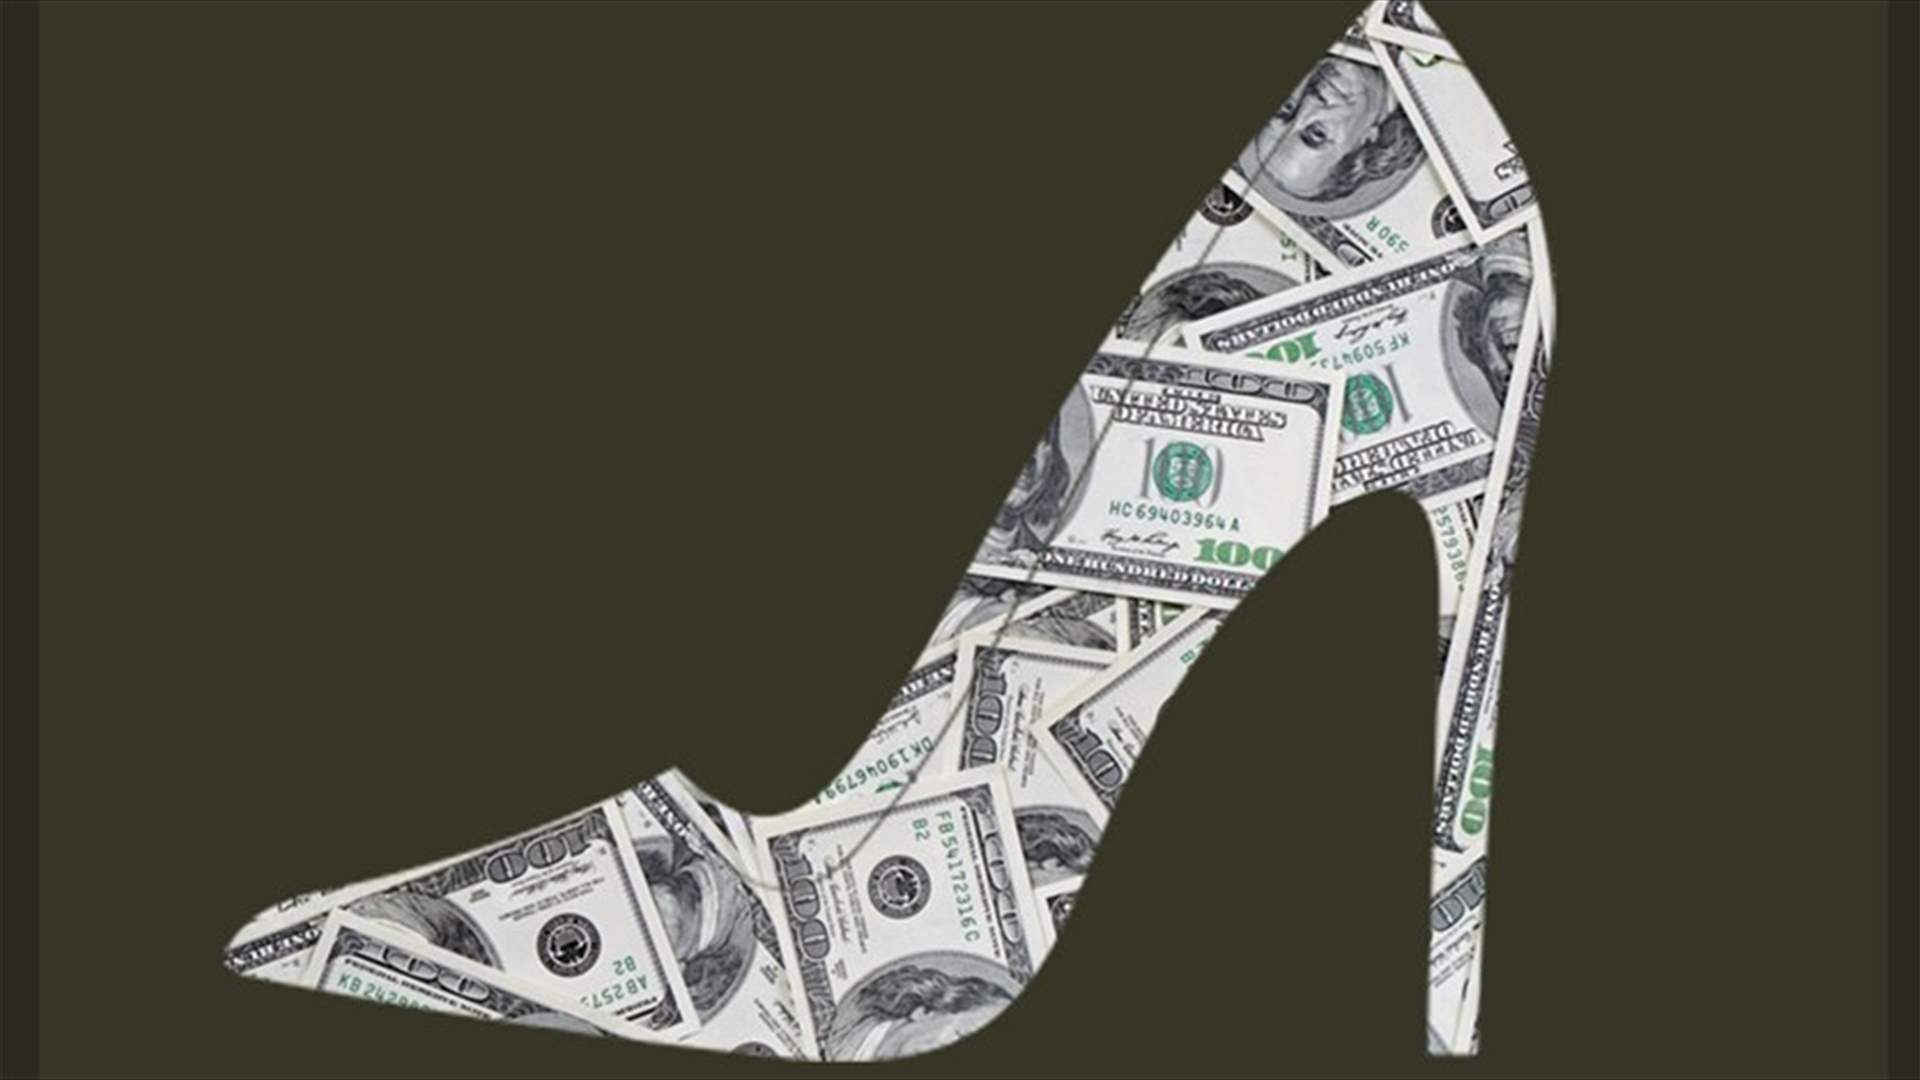 بالأرقام -  كيف يختلف ثمن الحذاء بين الرجال والنساء؟